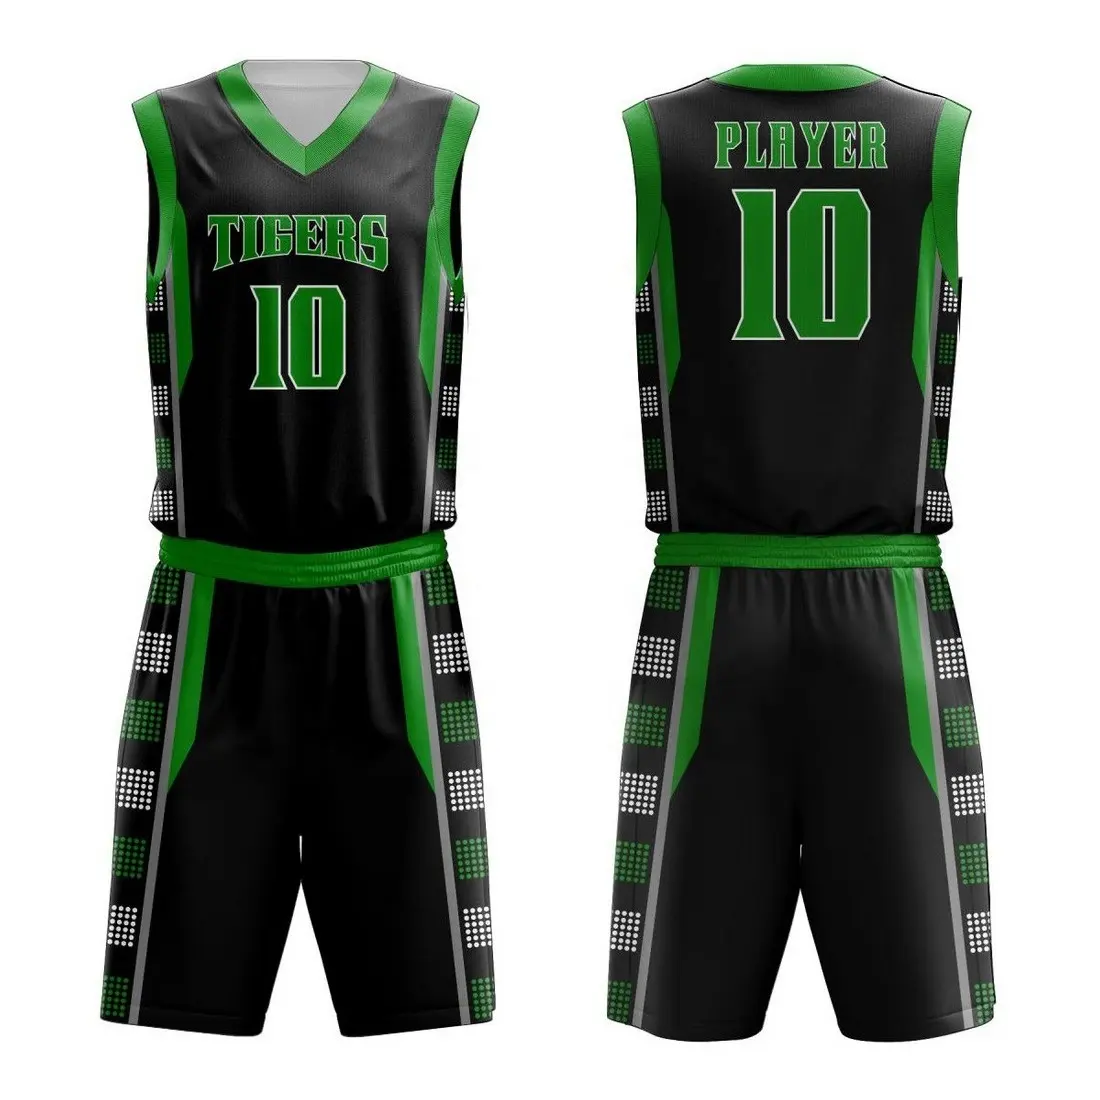 Sublimación personalizada de secado rápido de baloncesto Jersey uniforme de los hombres de impresión OEM personalizado sublimado mujeres uniforme de baloncesto